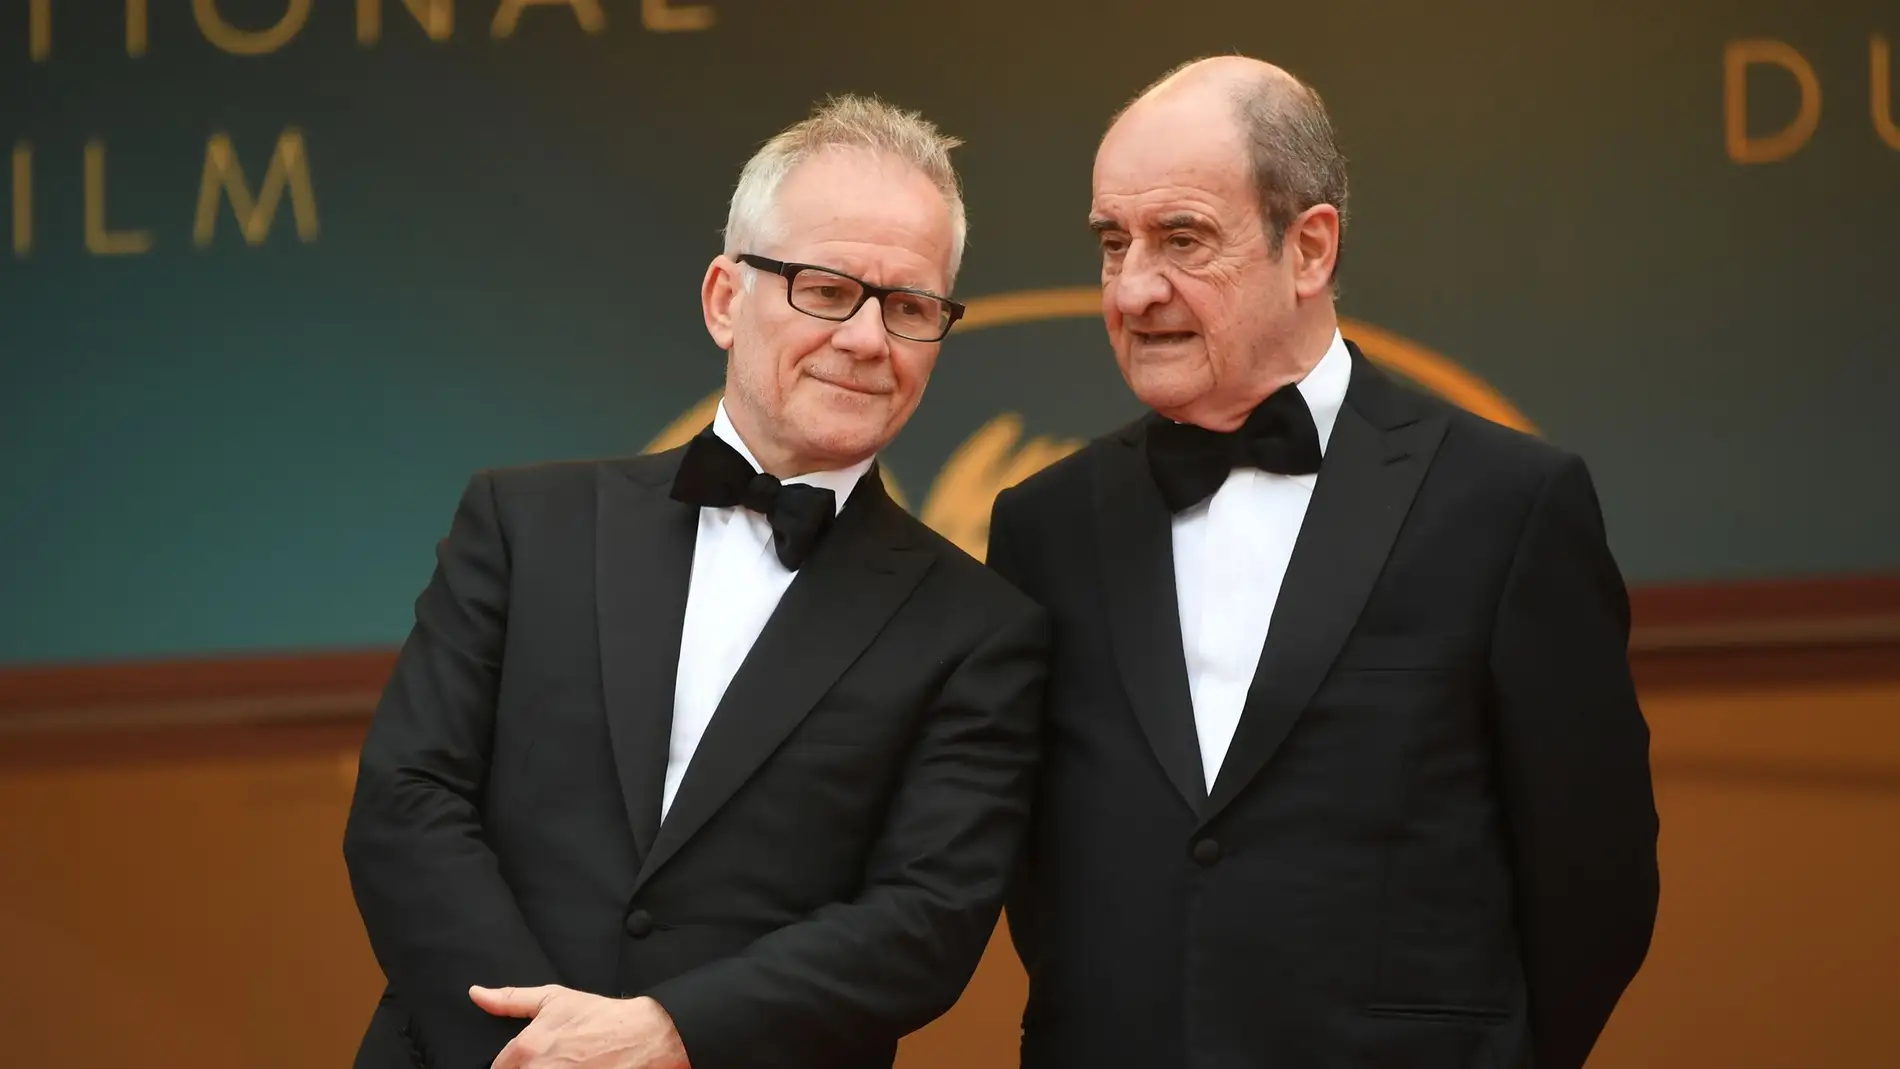 Thierry Fremaux [delegado general y director artístico del Festival de Cannes] y Pierre Lescure [presidente]